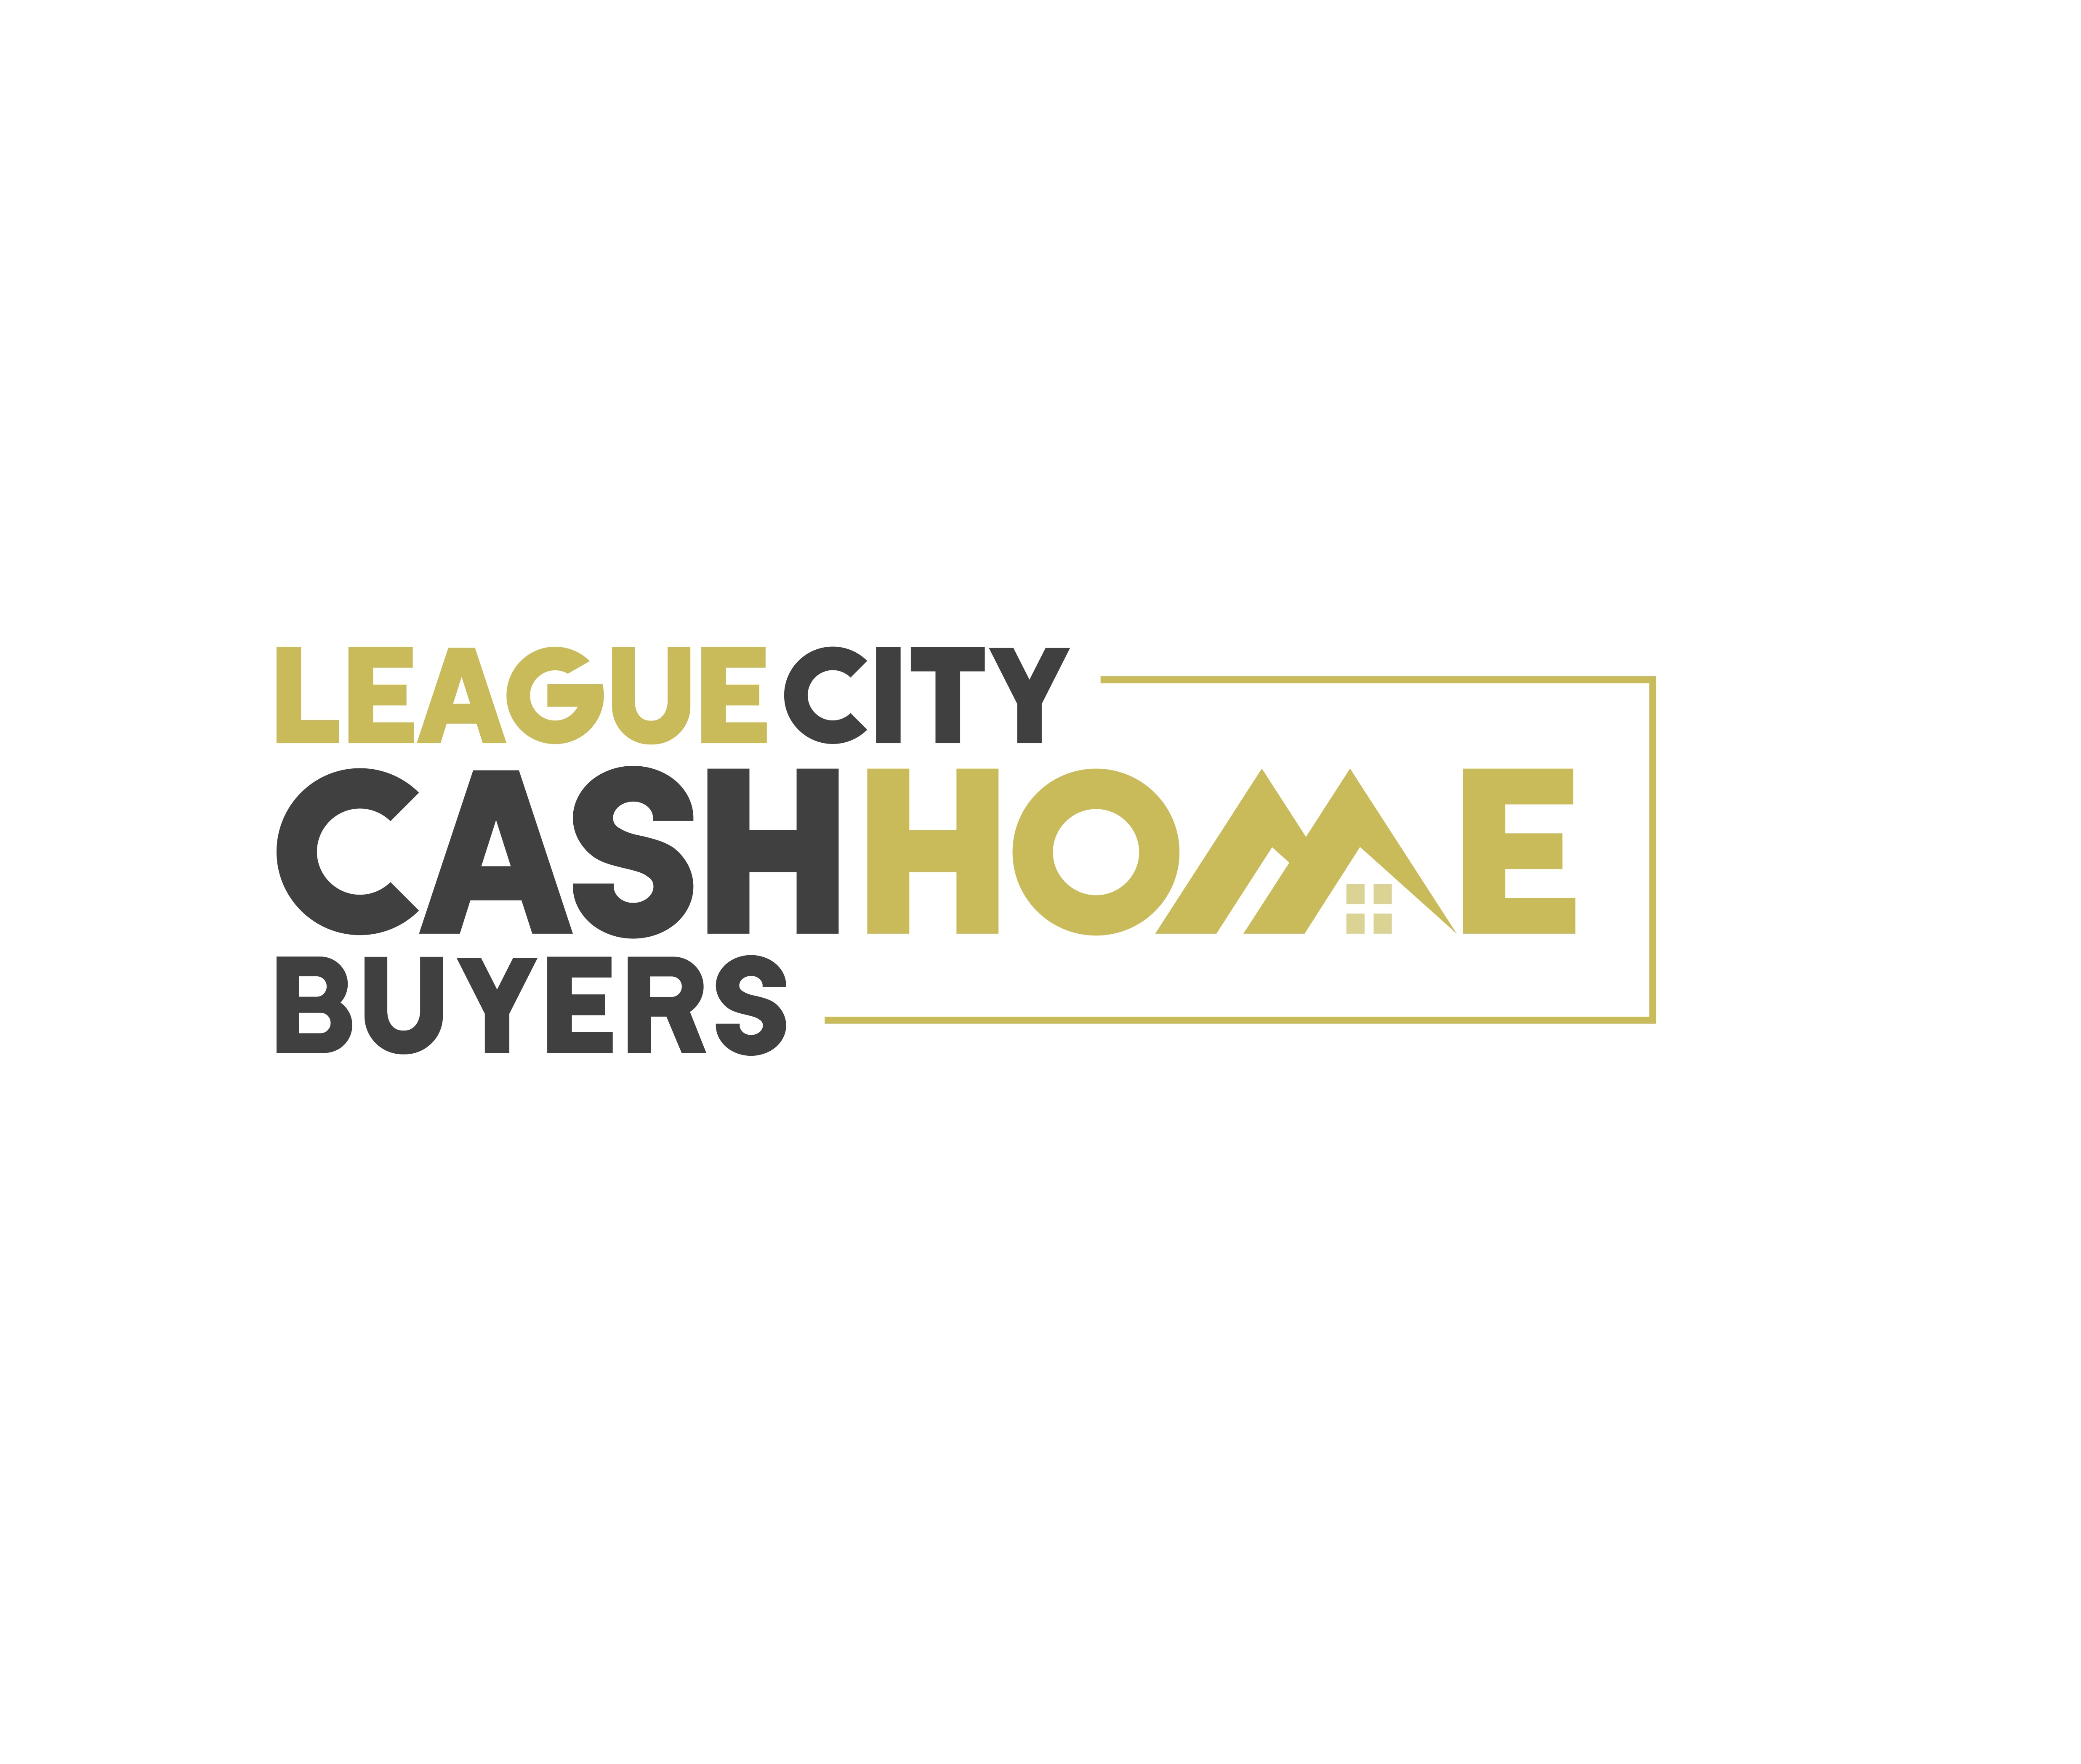 League City Cash Home Buyers